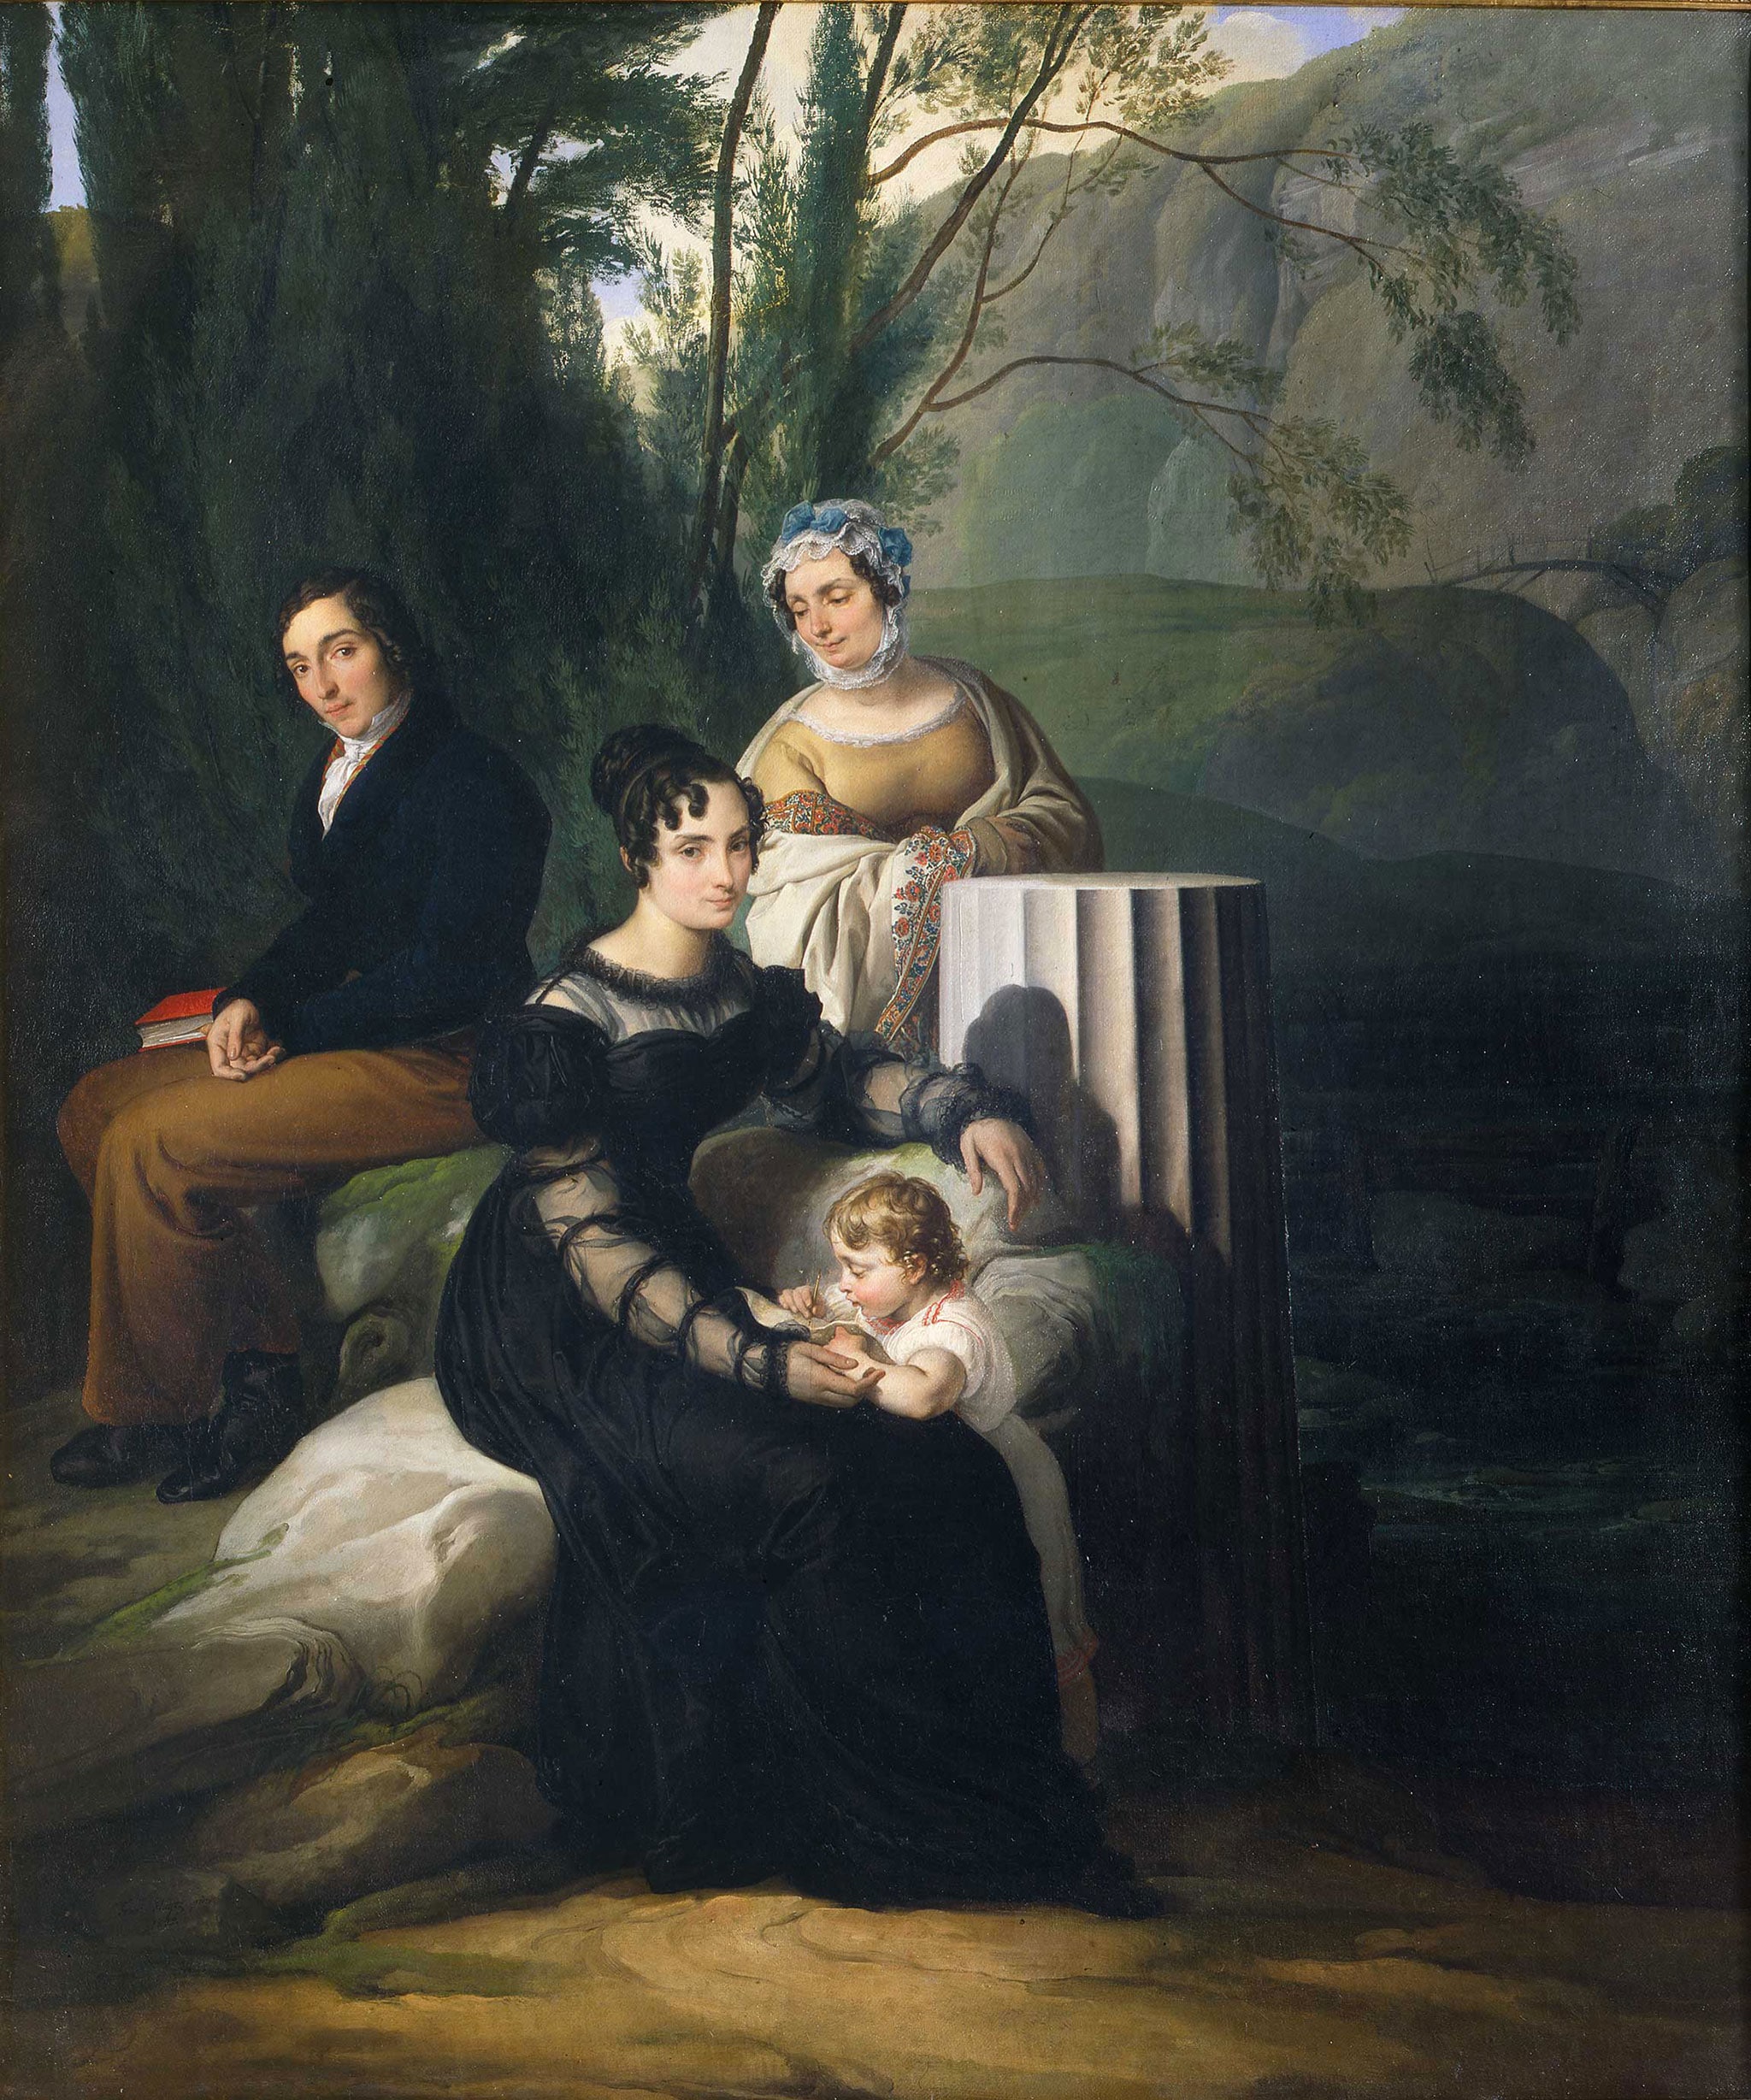 Francesco Hayez "Ritratto della famiglia Borri Stampa", 1822. Olio su tela, 125 x 108 cm. Pinacoteca di Brera, Milano.